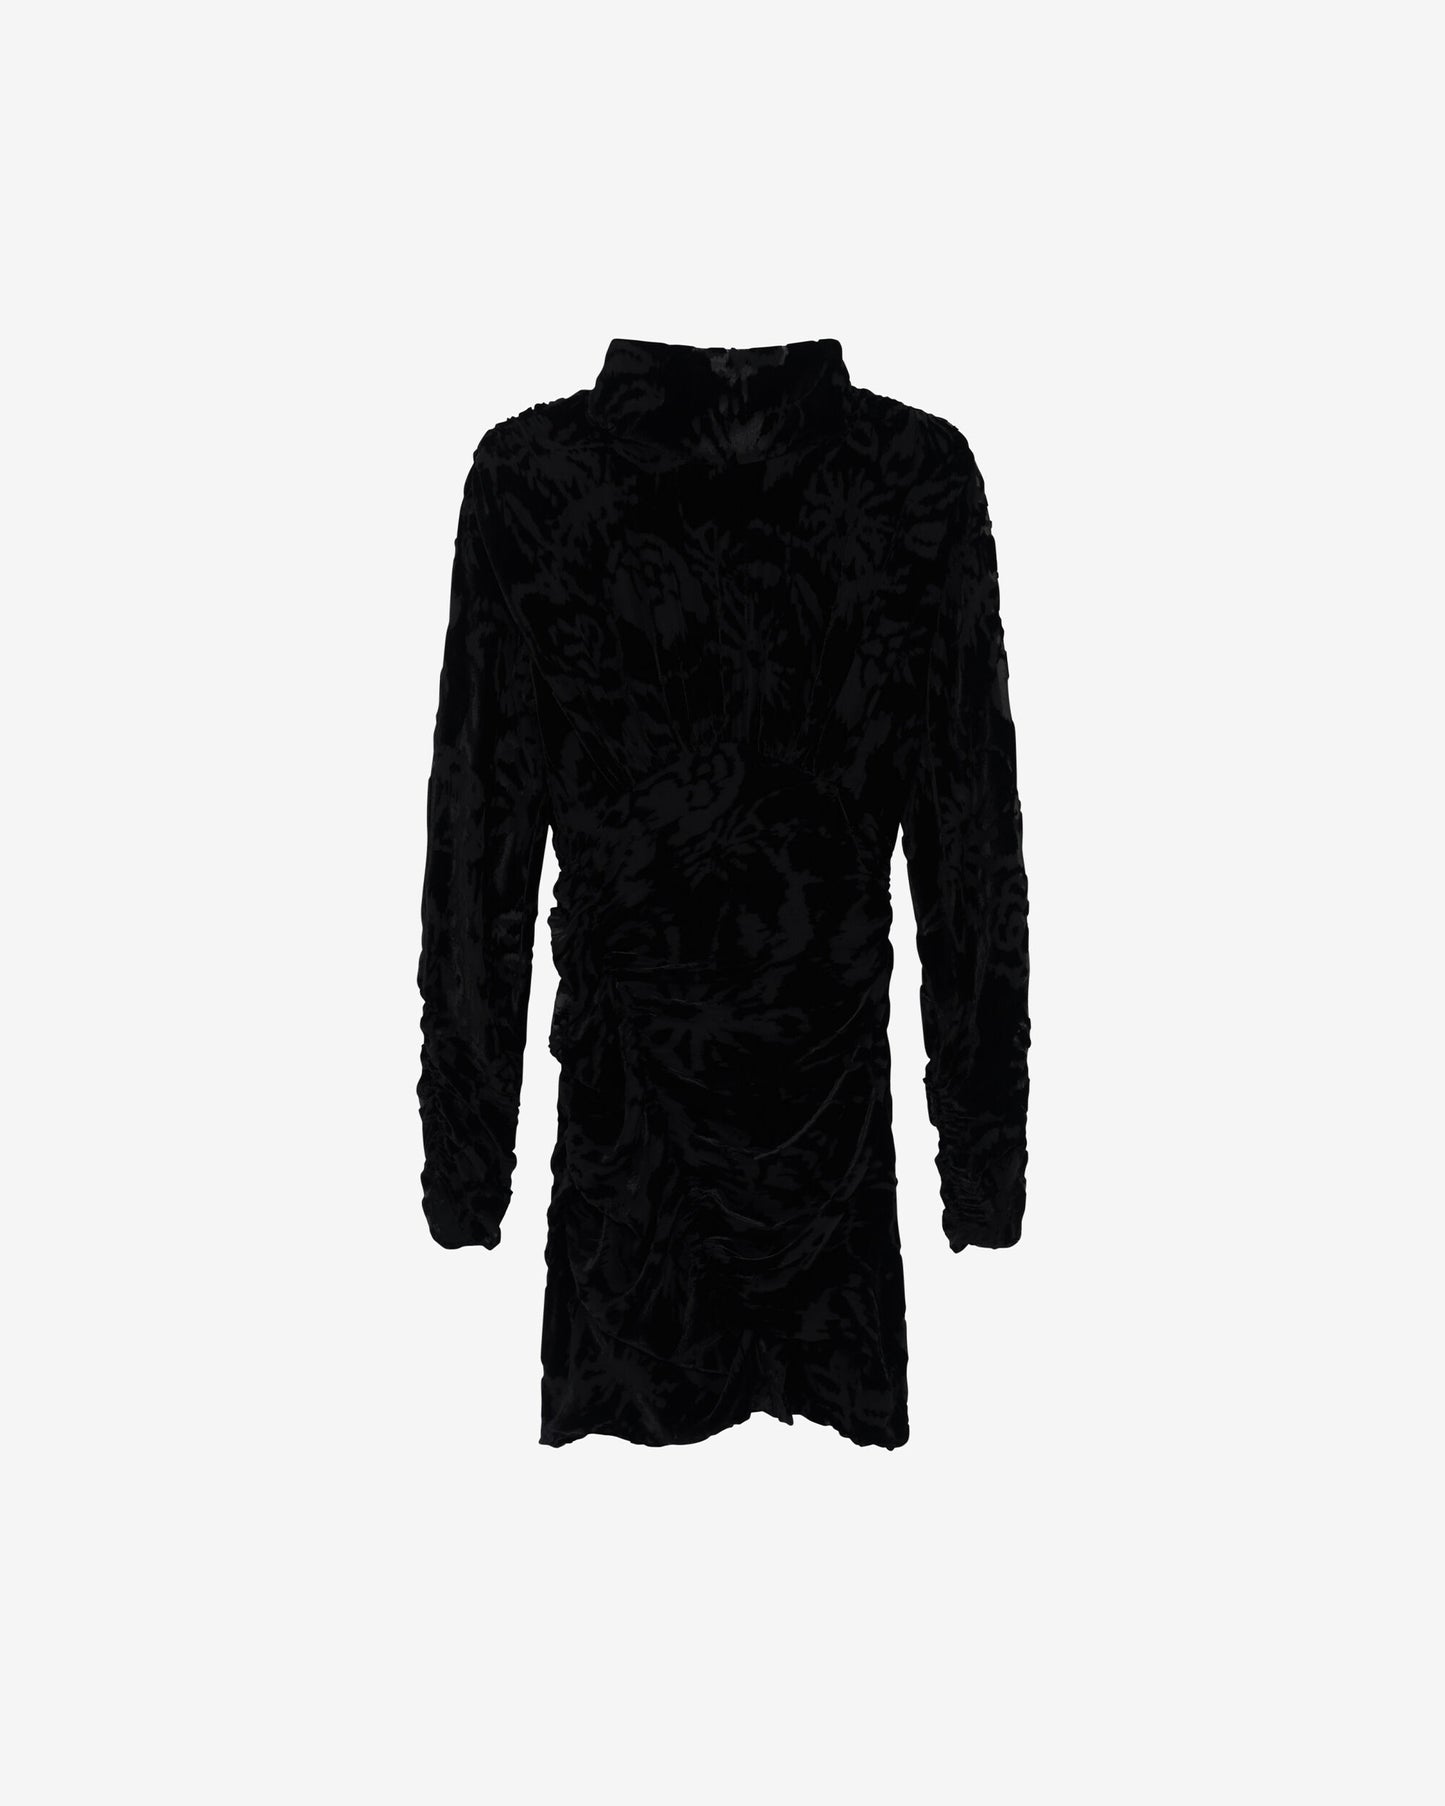 NARIVO PATTERNED VELOUR DRESS - BLACK